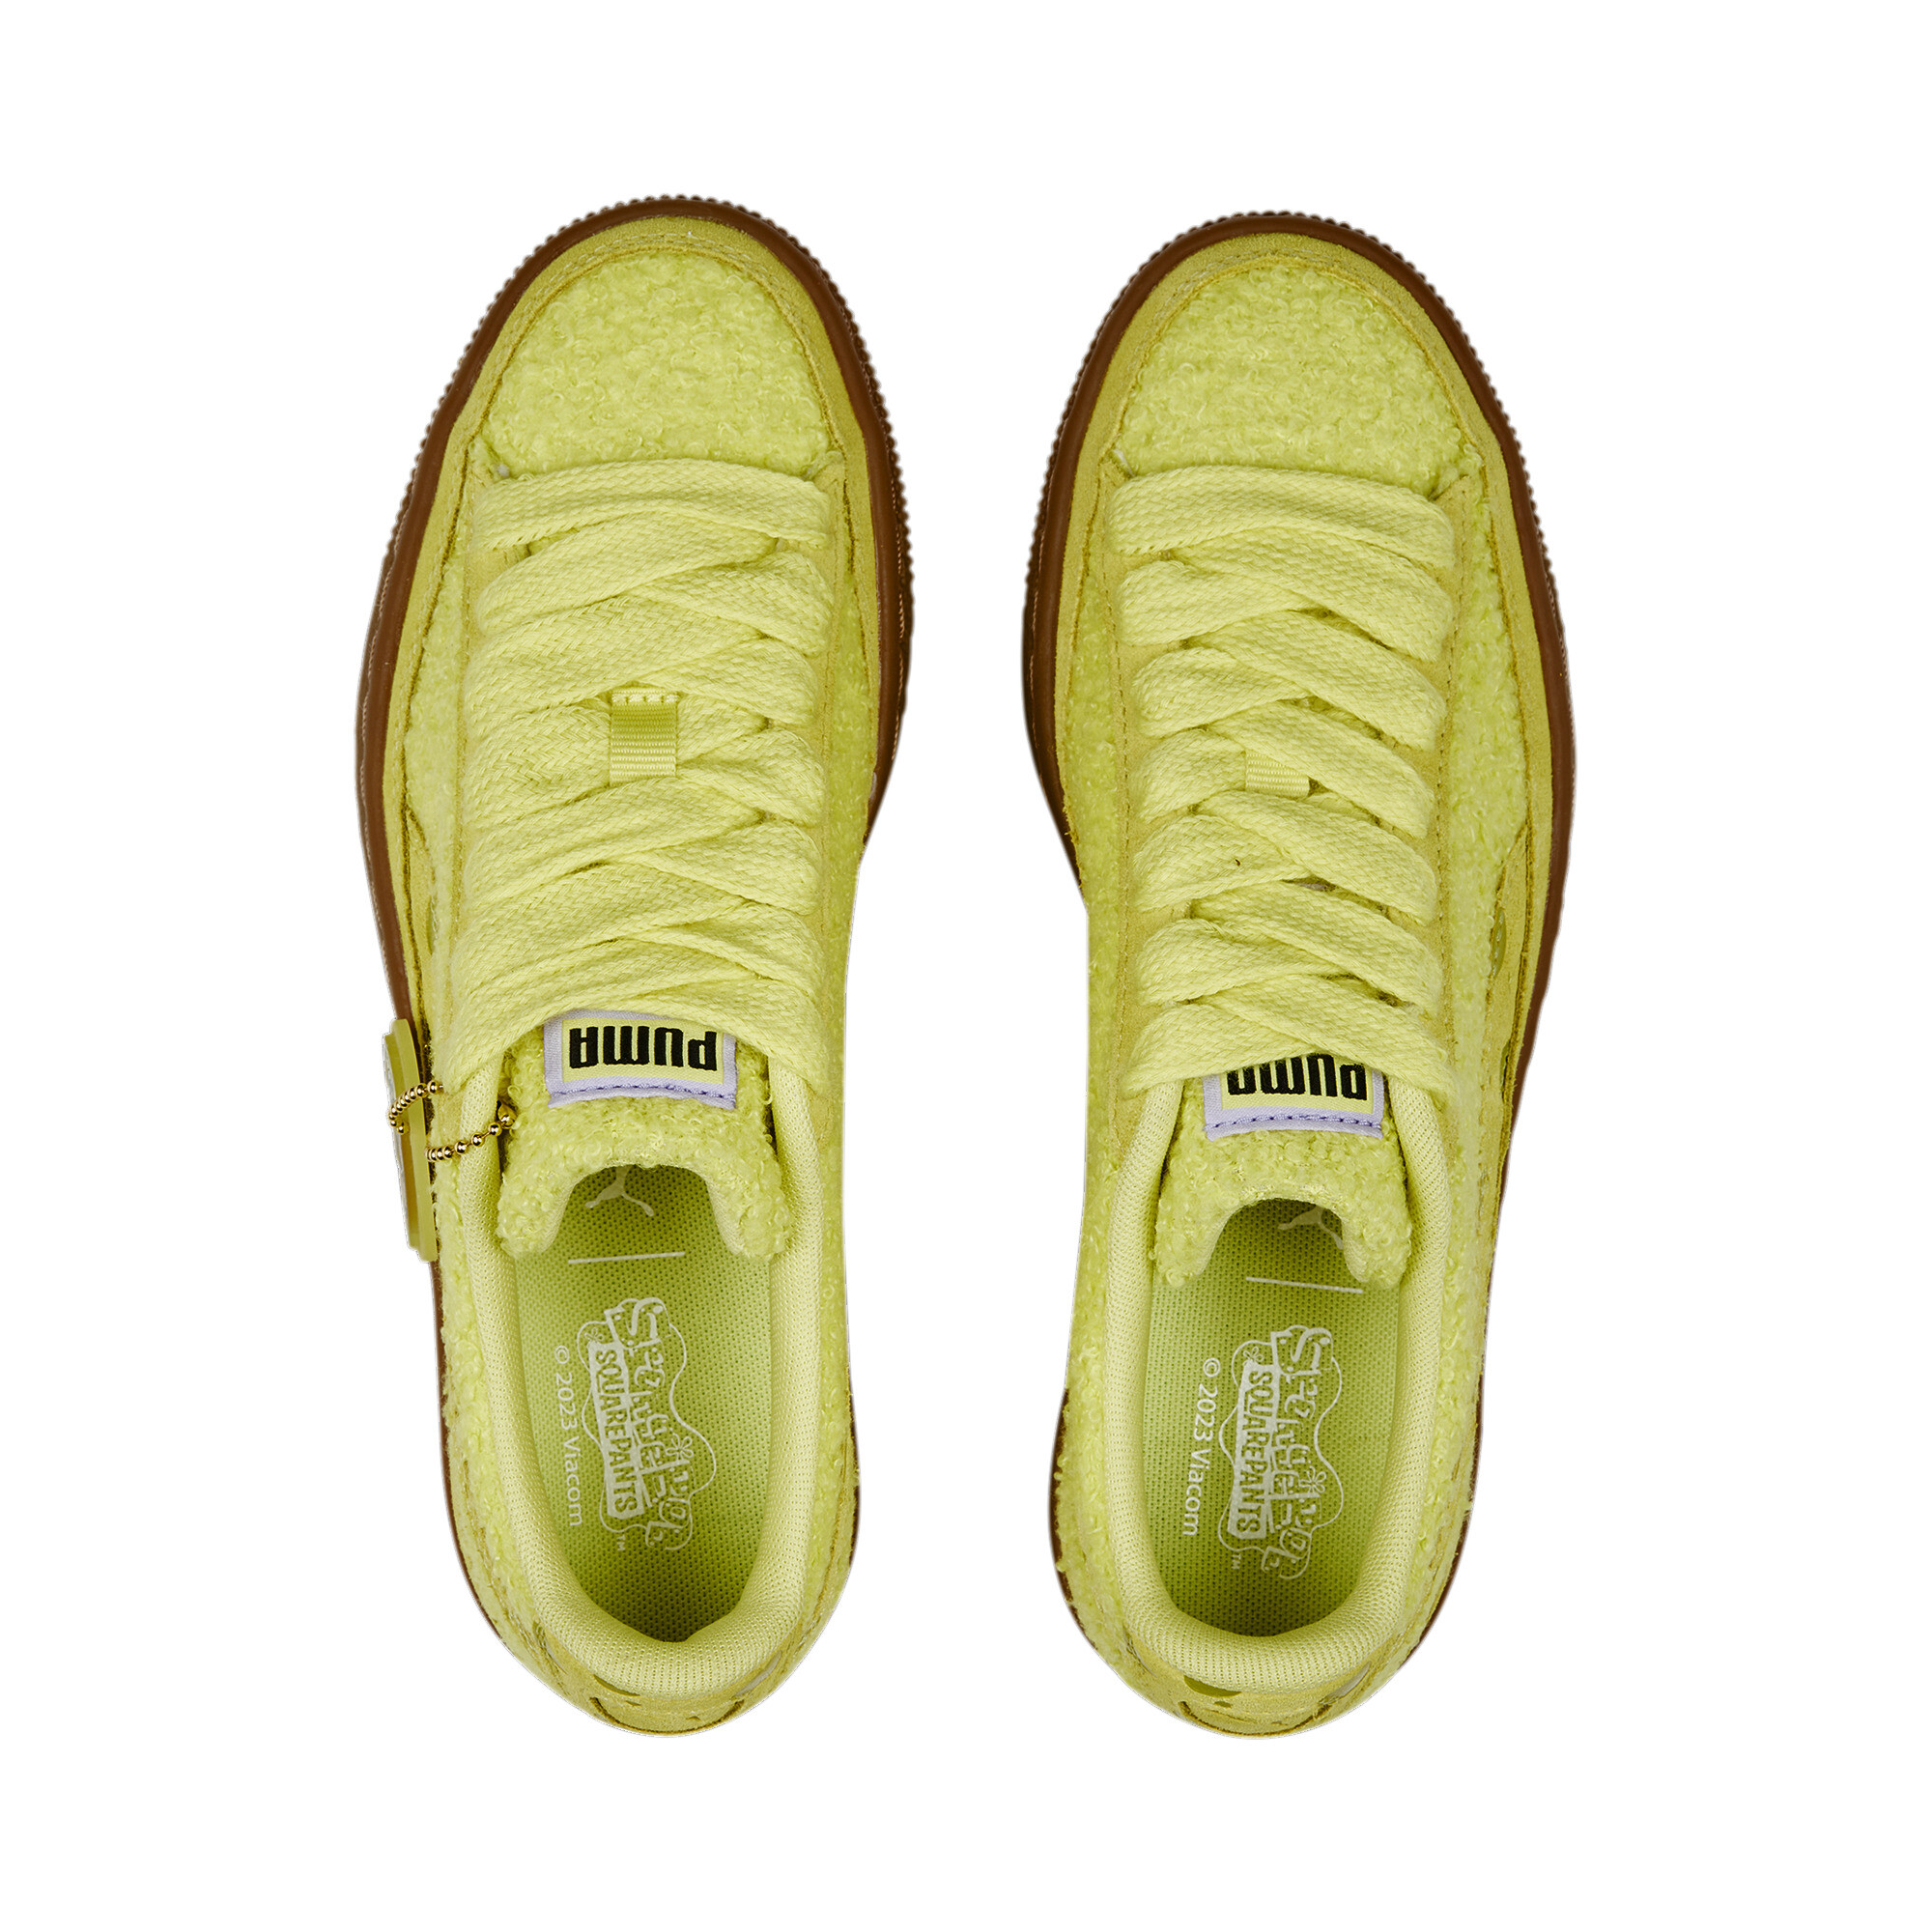 حذاء رياضي للشباب PUMA X SPONGEBOB Suede أصفر